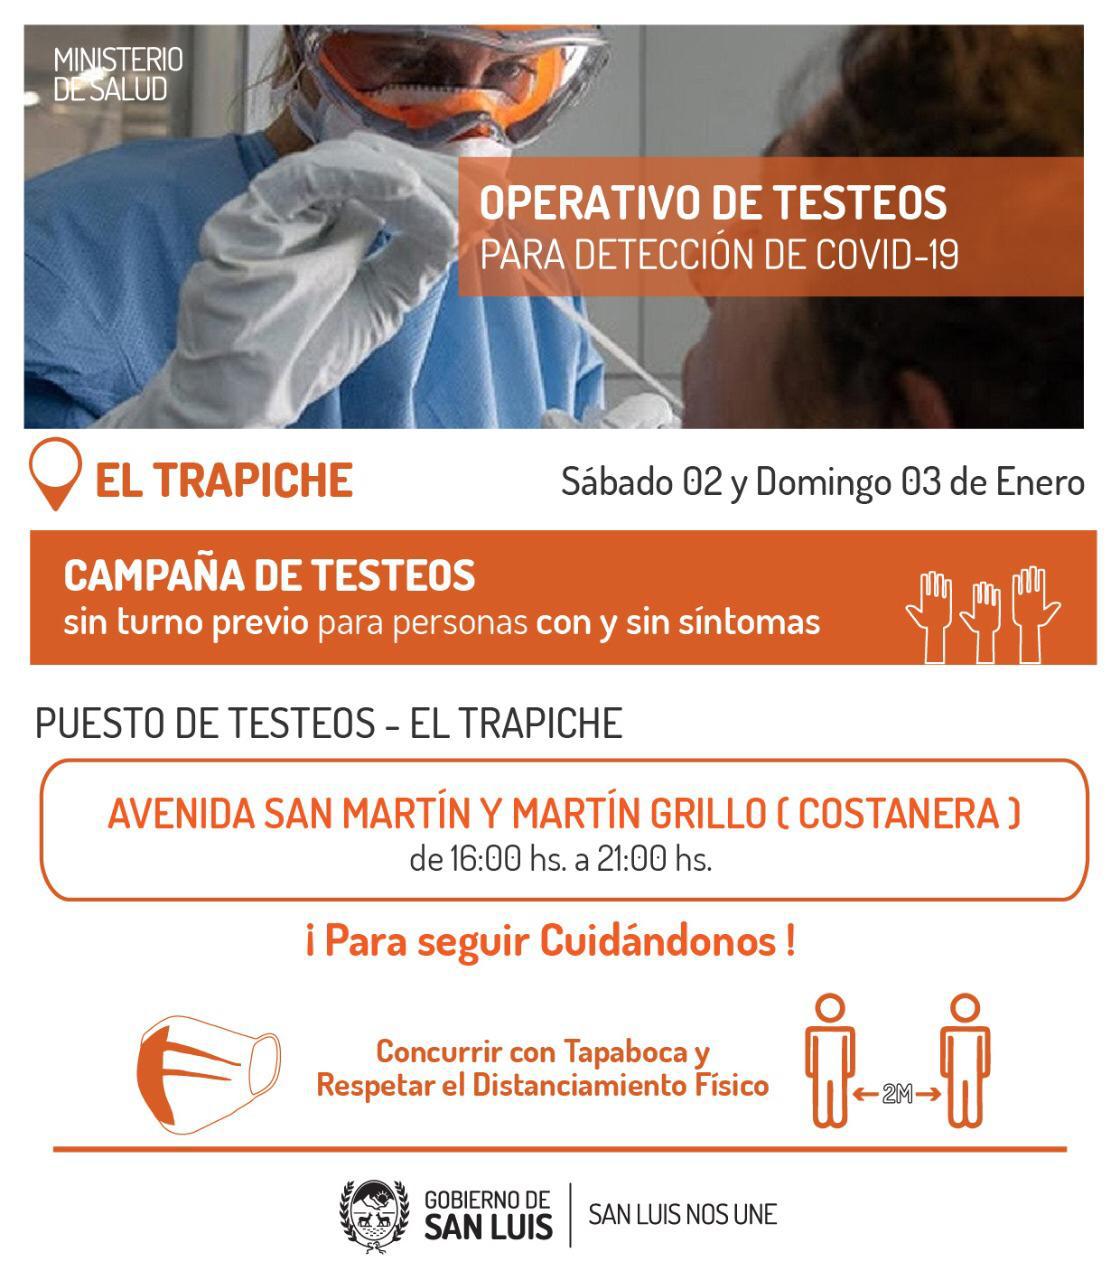 Este sábado y domingo realizarán testeos para detección de COVID-19 en El Trapiche